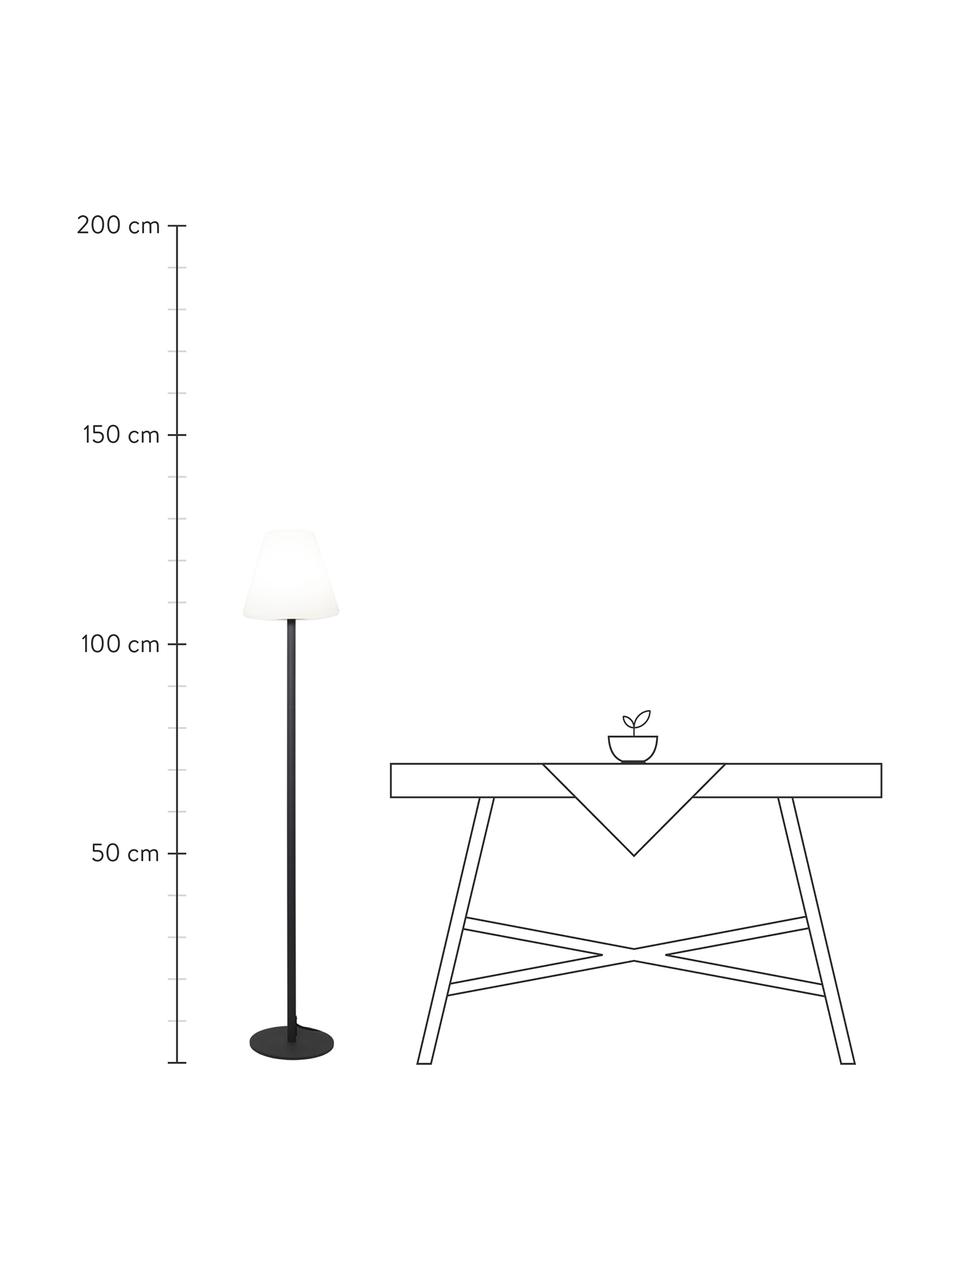 Outdoor Stehlampe Gardenlight mit Stecker, Lampenschirm: Kunststoff, Lampenfuß: Metall, beschichtet, Weiß, Anthrazit, Ø 28 x H 150 cm